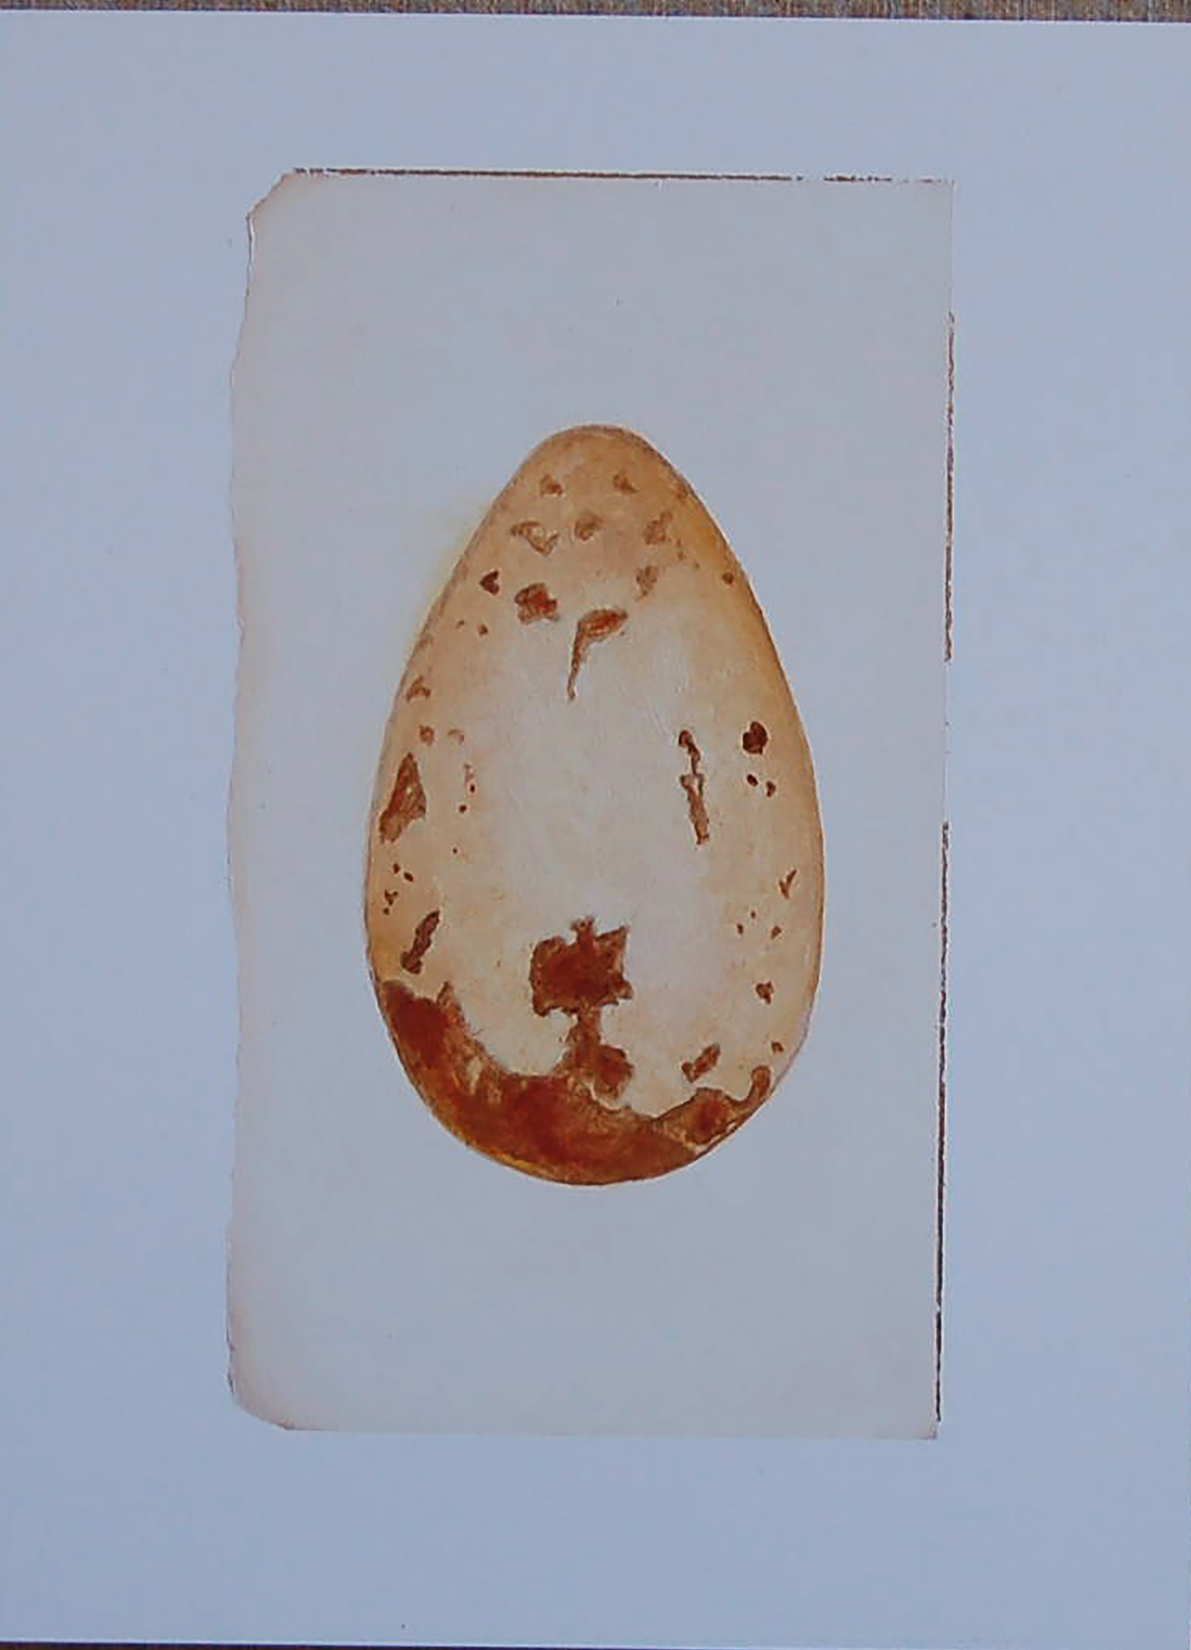 FalconeAuk egg